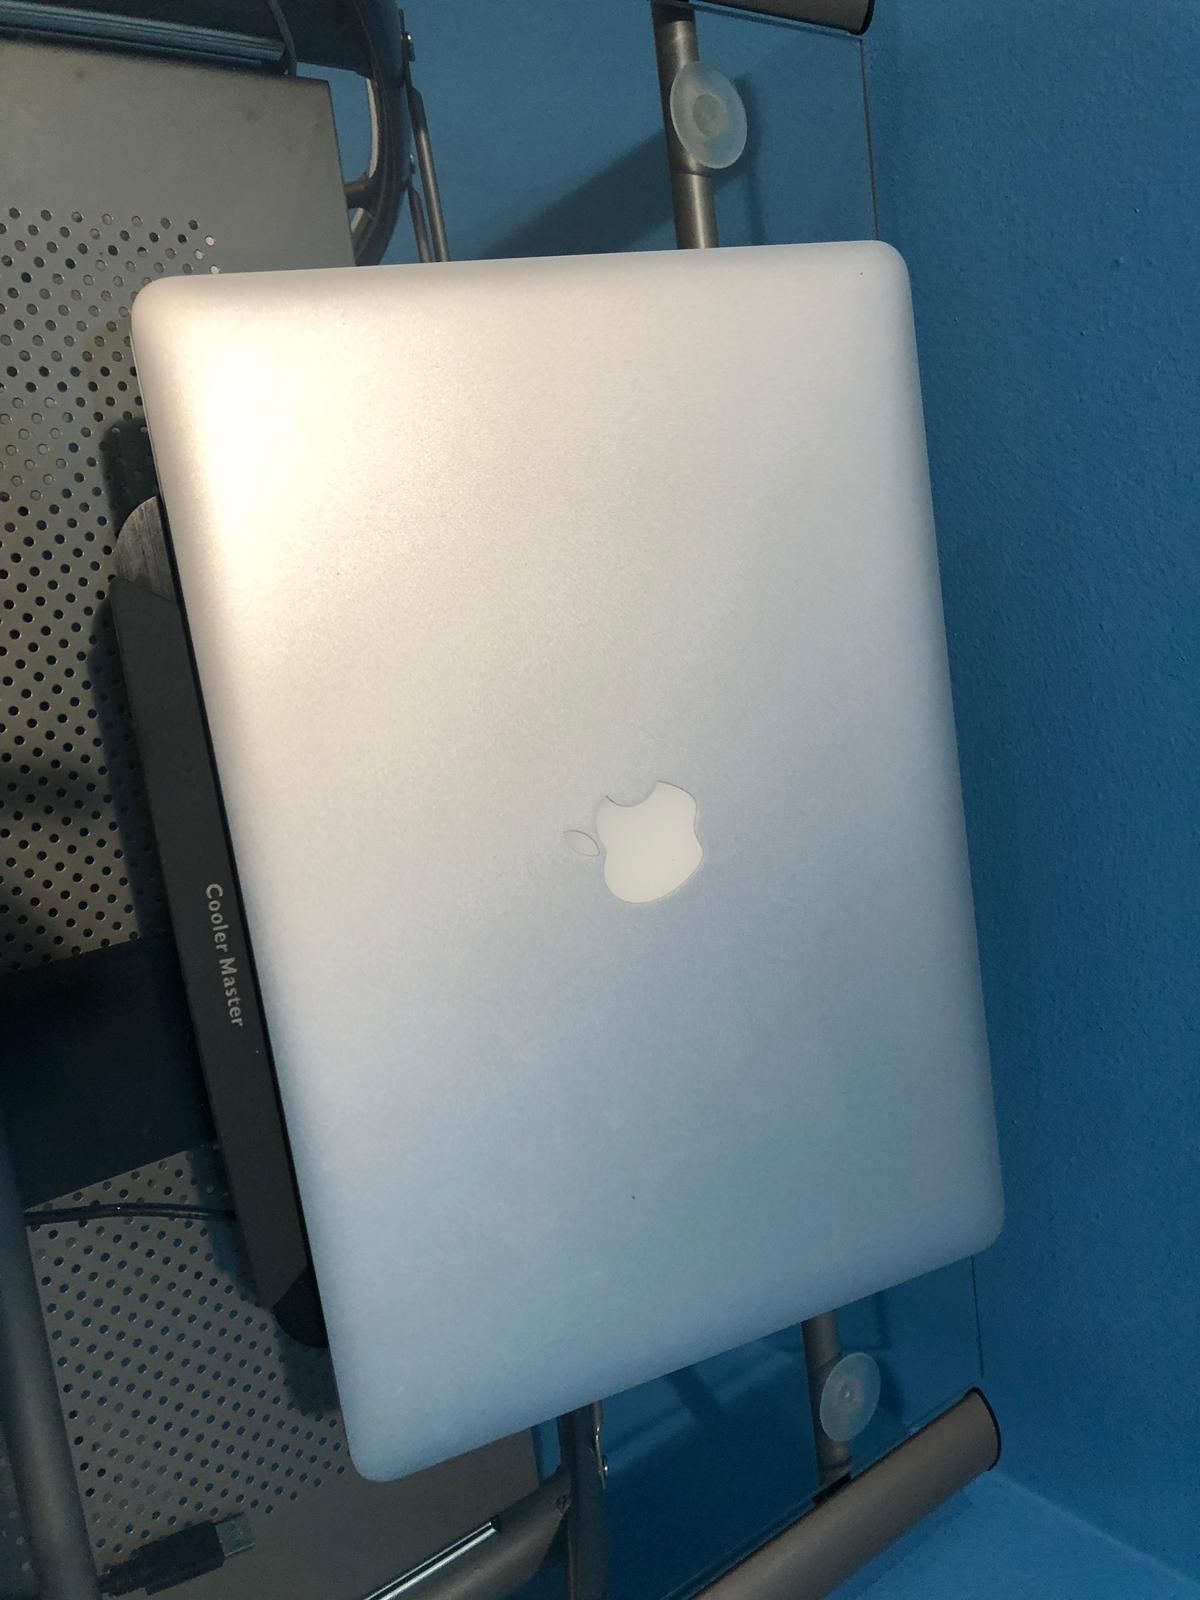 2013 MacBook